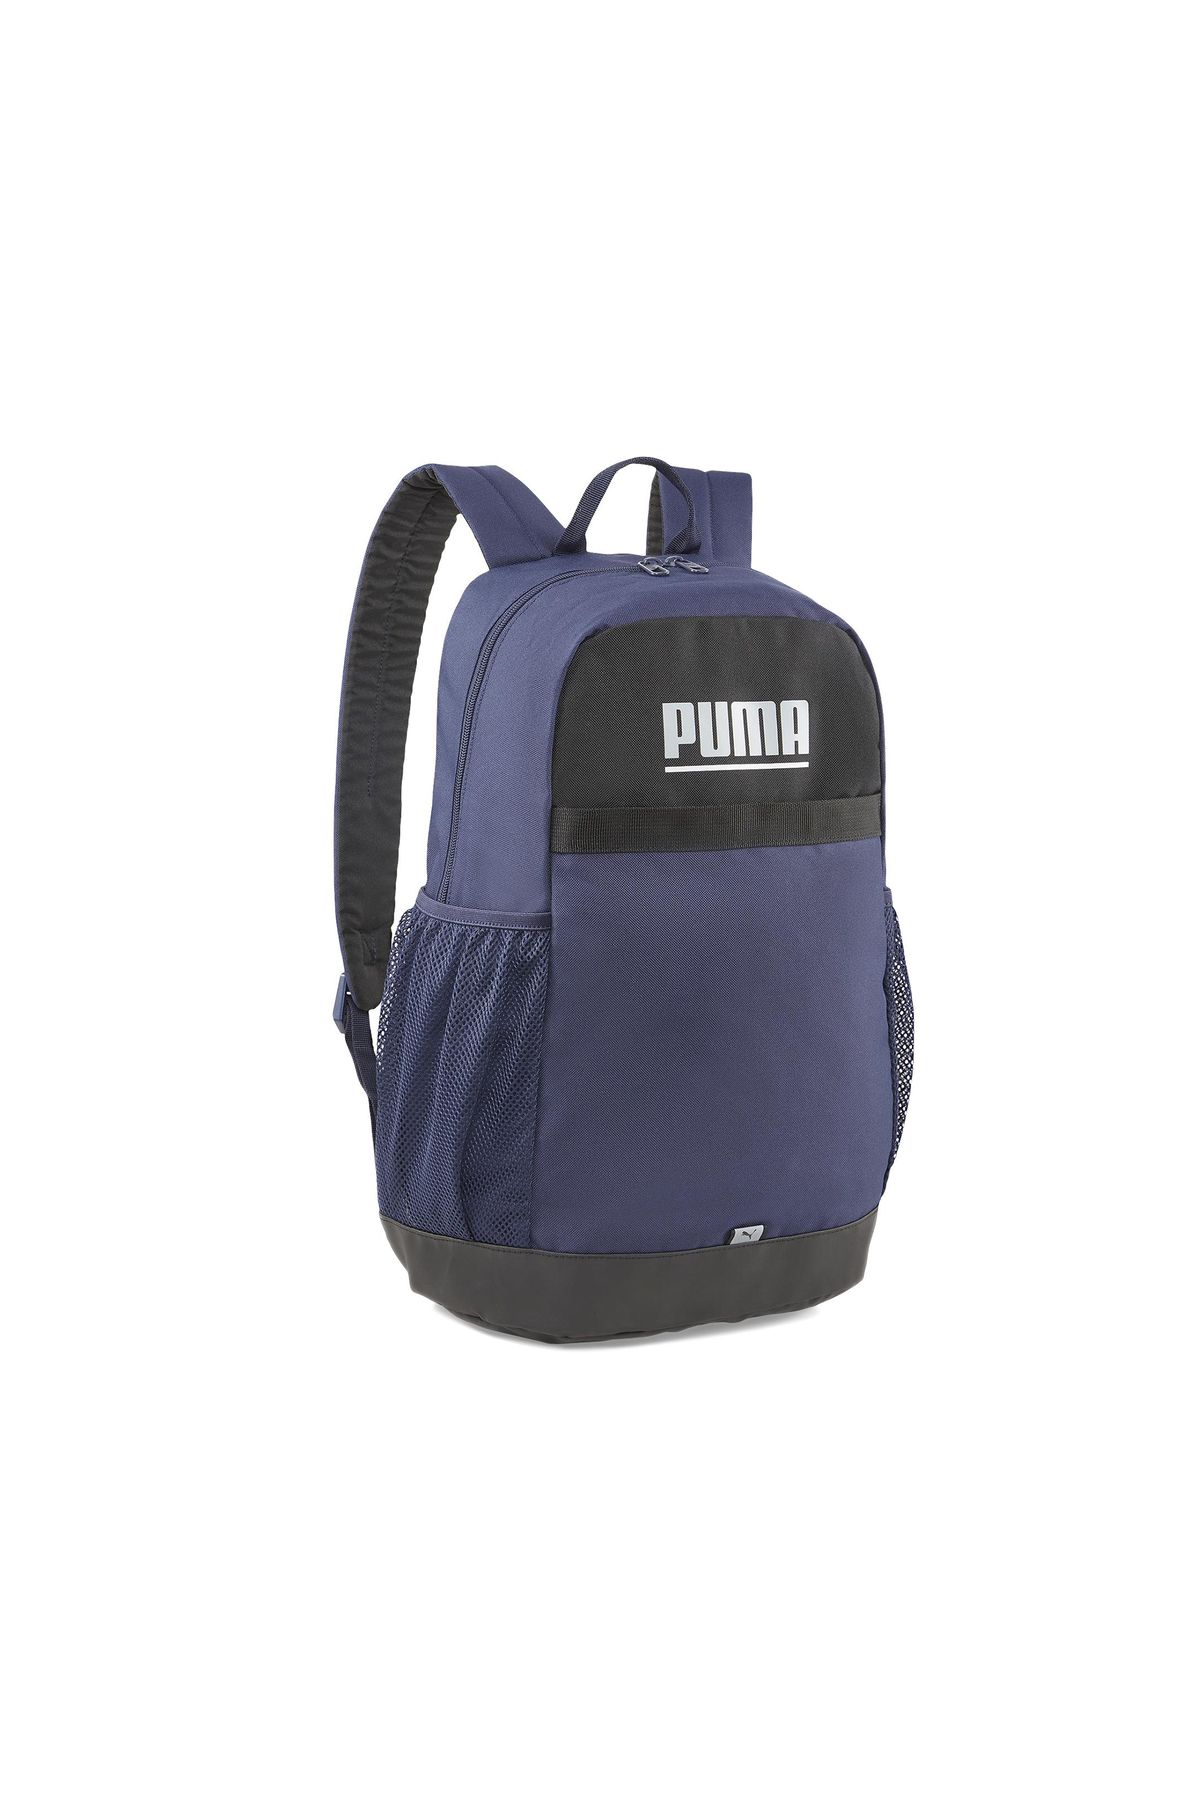 Puma Phase Backpack Günlük Kullanıma ve Spora Uygun Sırt Çantası Okul Çantası Siyah